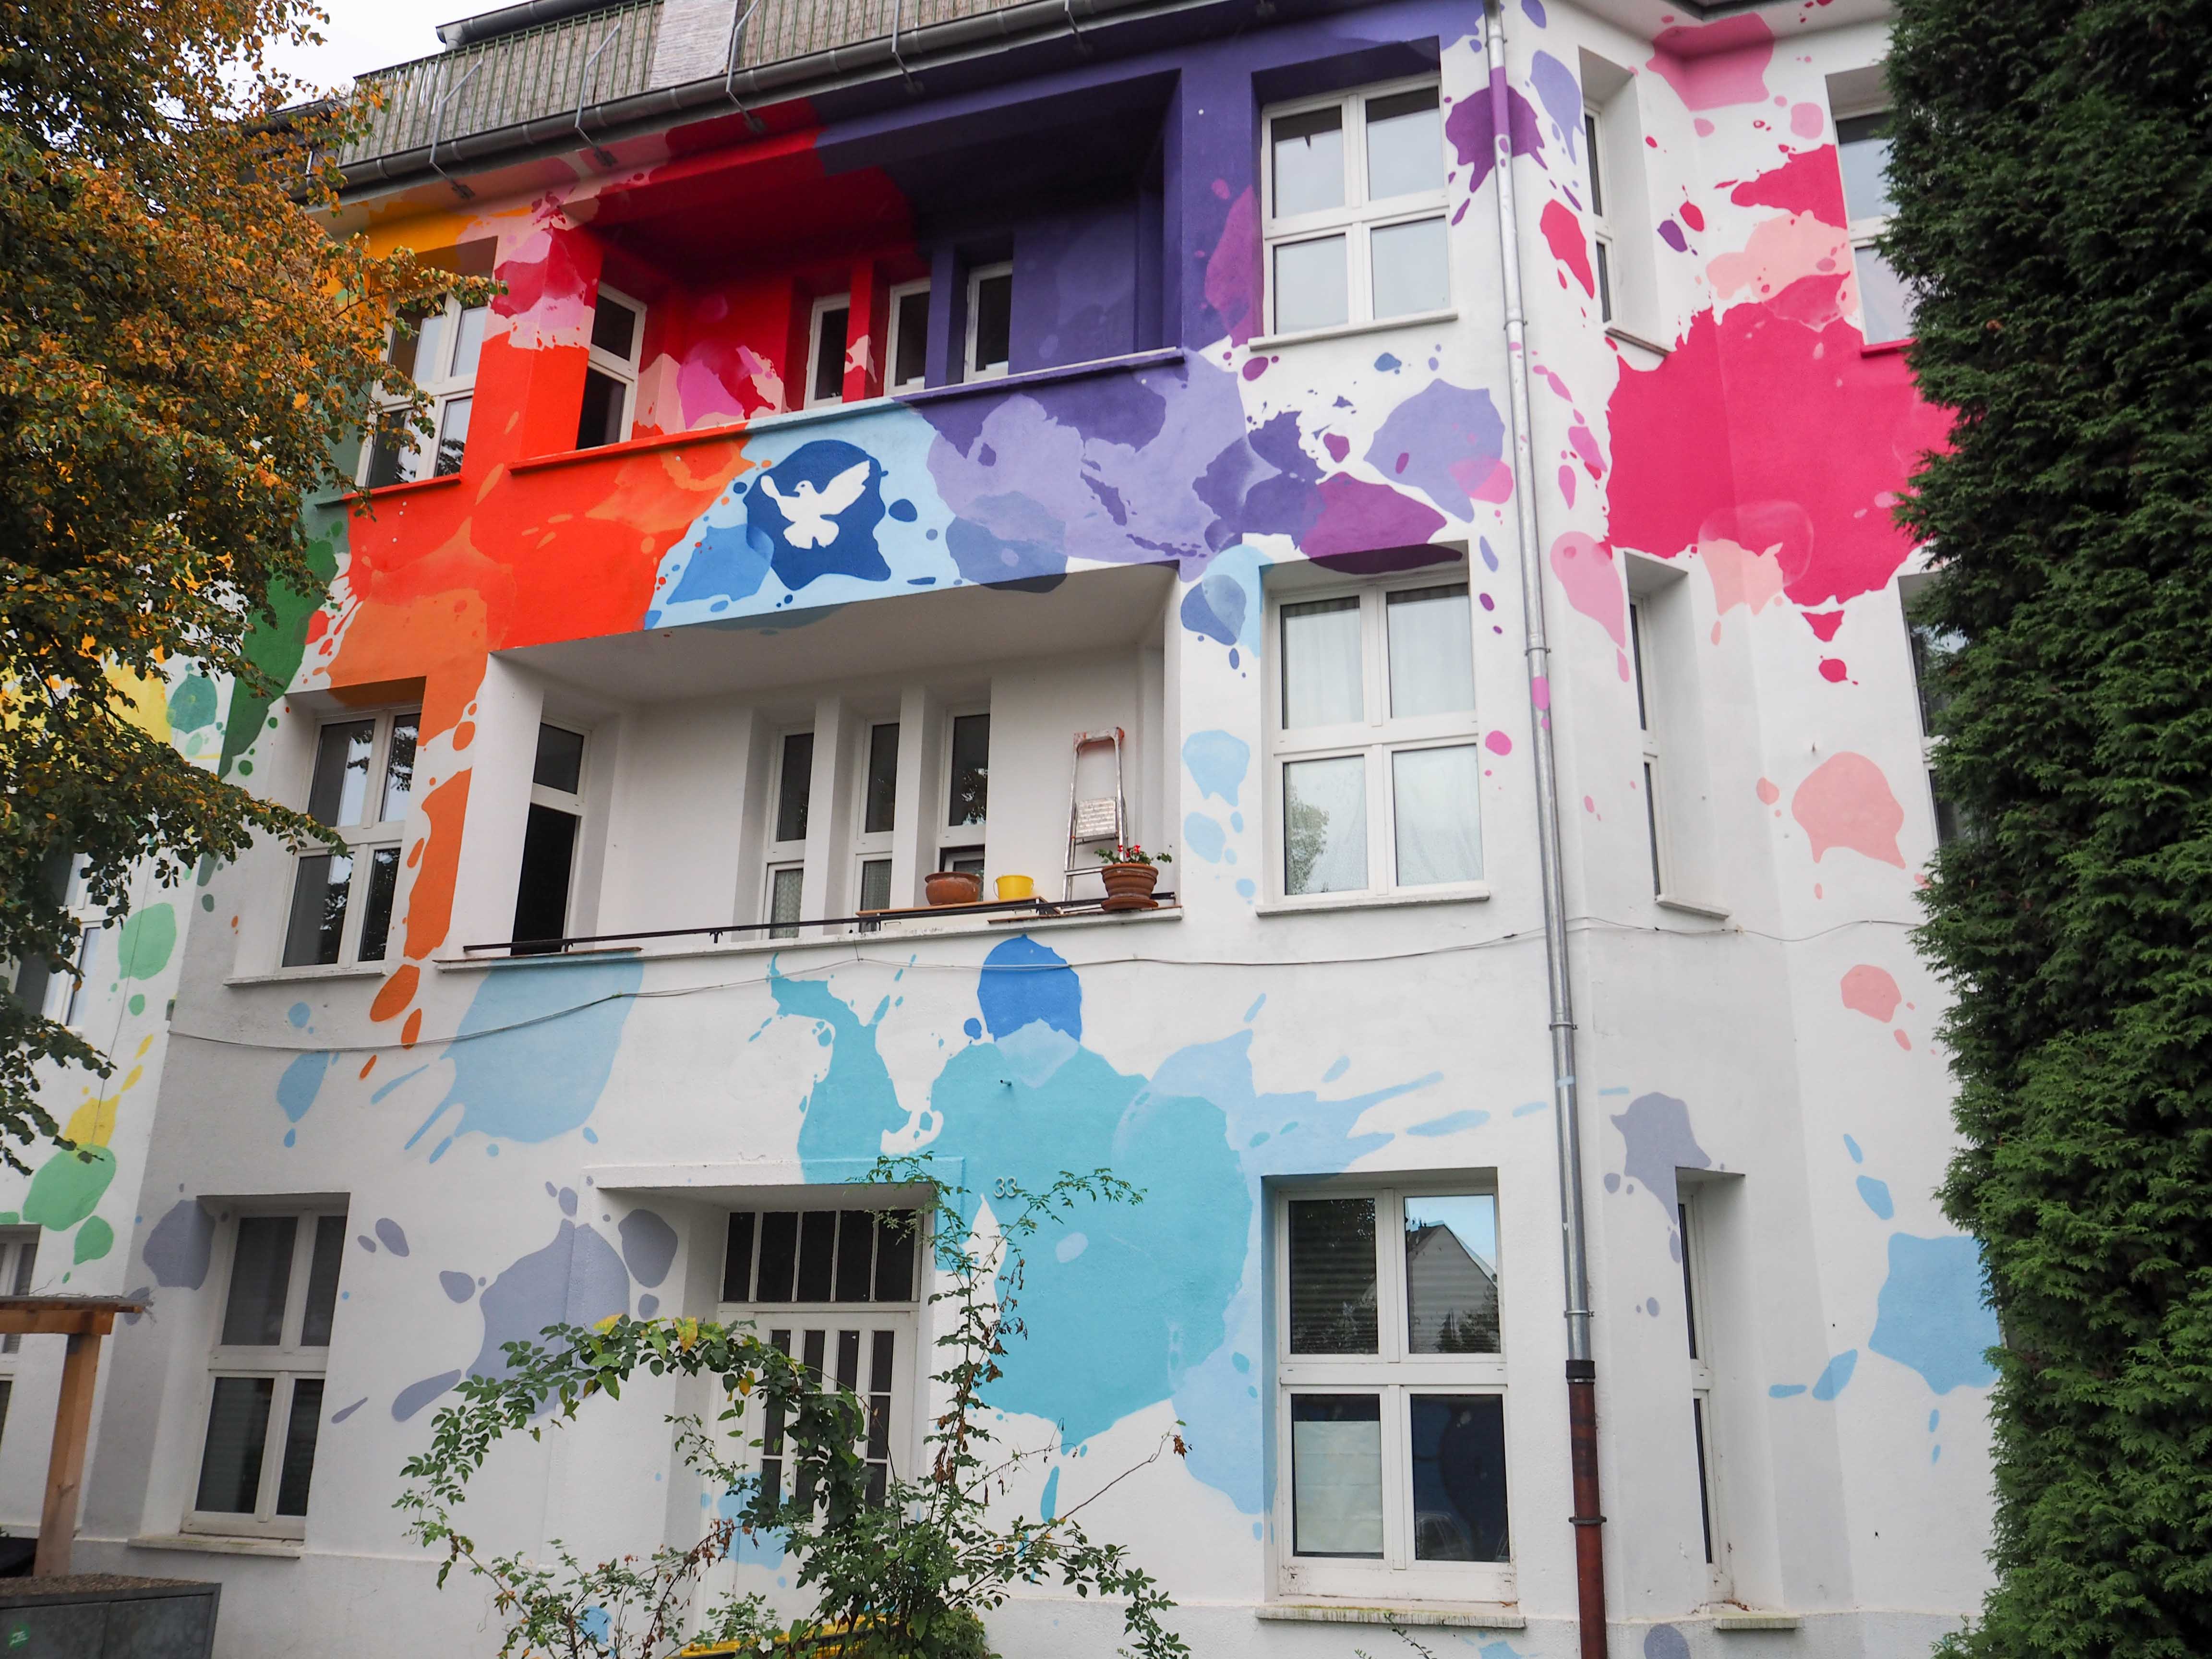 unbekannte Künstler haben bunte Farbklekse und eine Friedenstaube auf die Hauswand gemalt